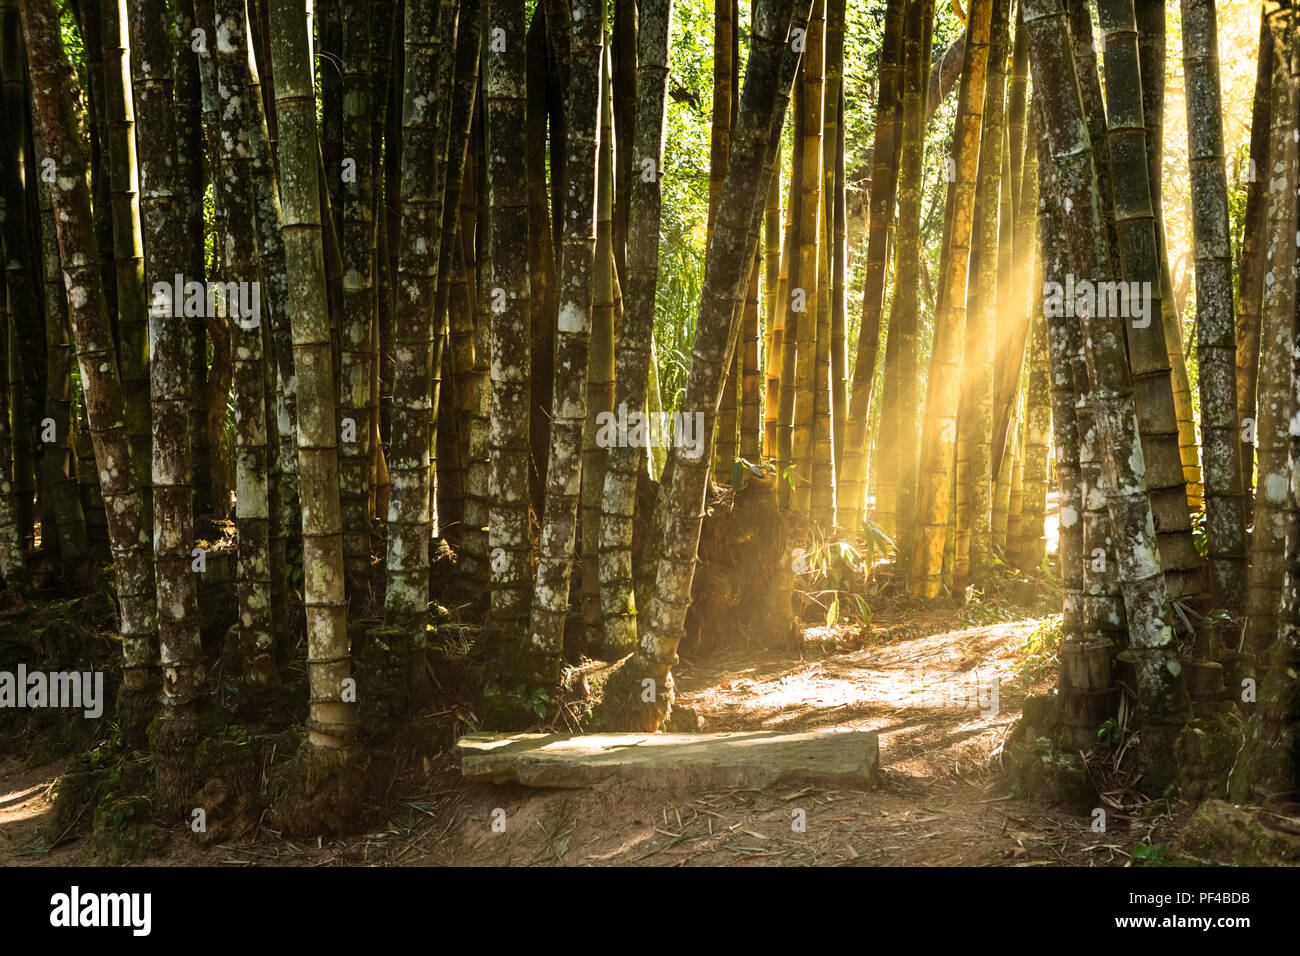 Forêt de bambous géants Banque D'Images